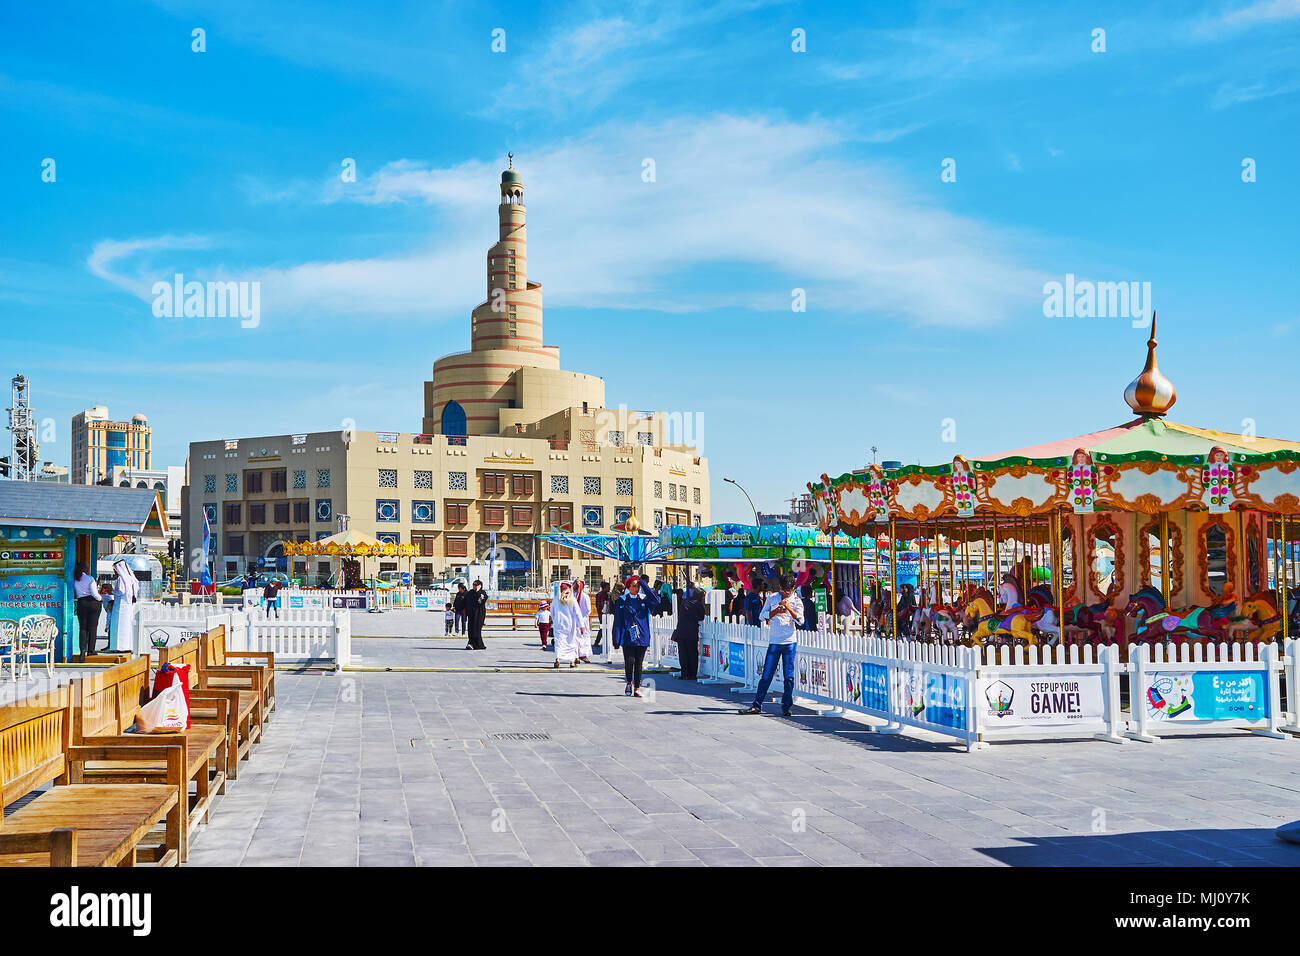 DOHA, Katar - 13. FEBRUAR 2018: Die Straße von Al Souq Bezirk mit karussells von Luna Park und die malerischen Gebäude von Al Fanar Moschee auf dem backgrou Stockfoto